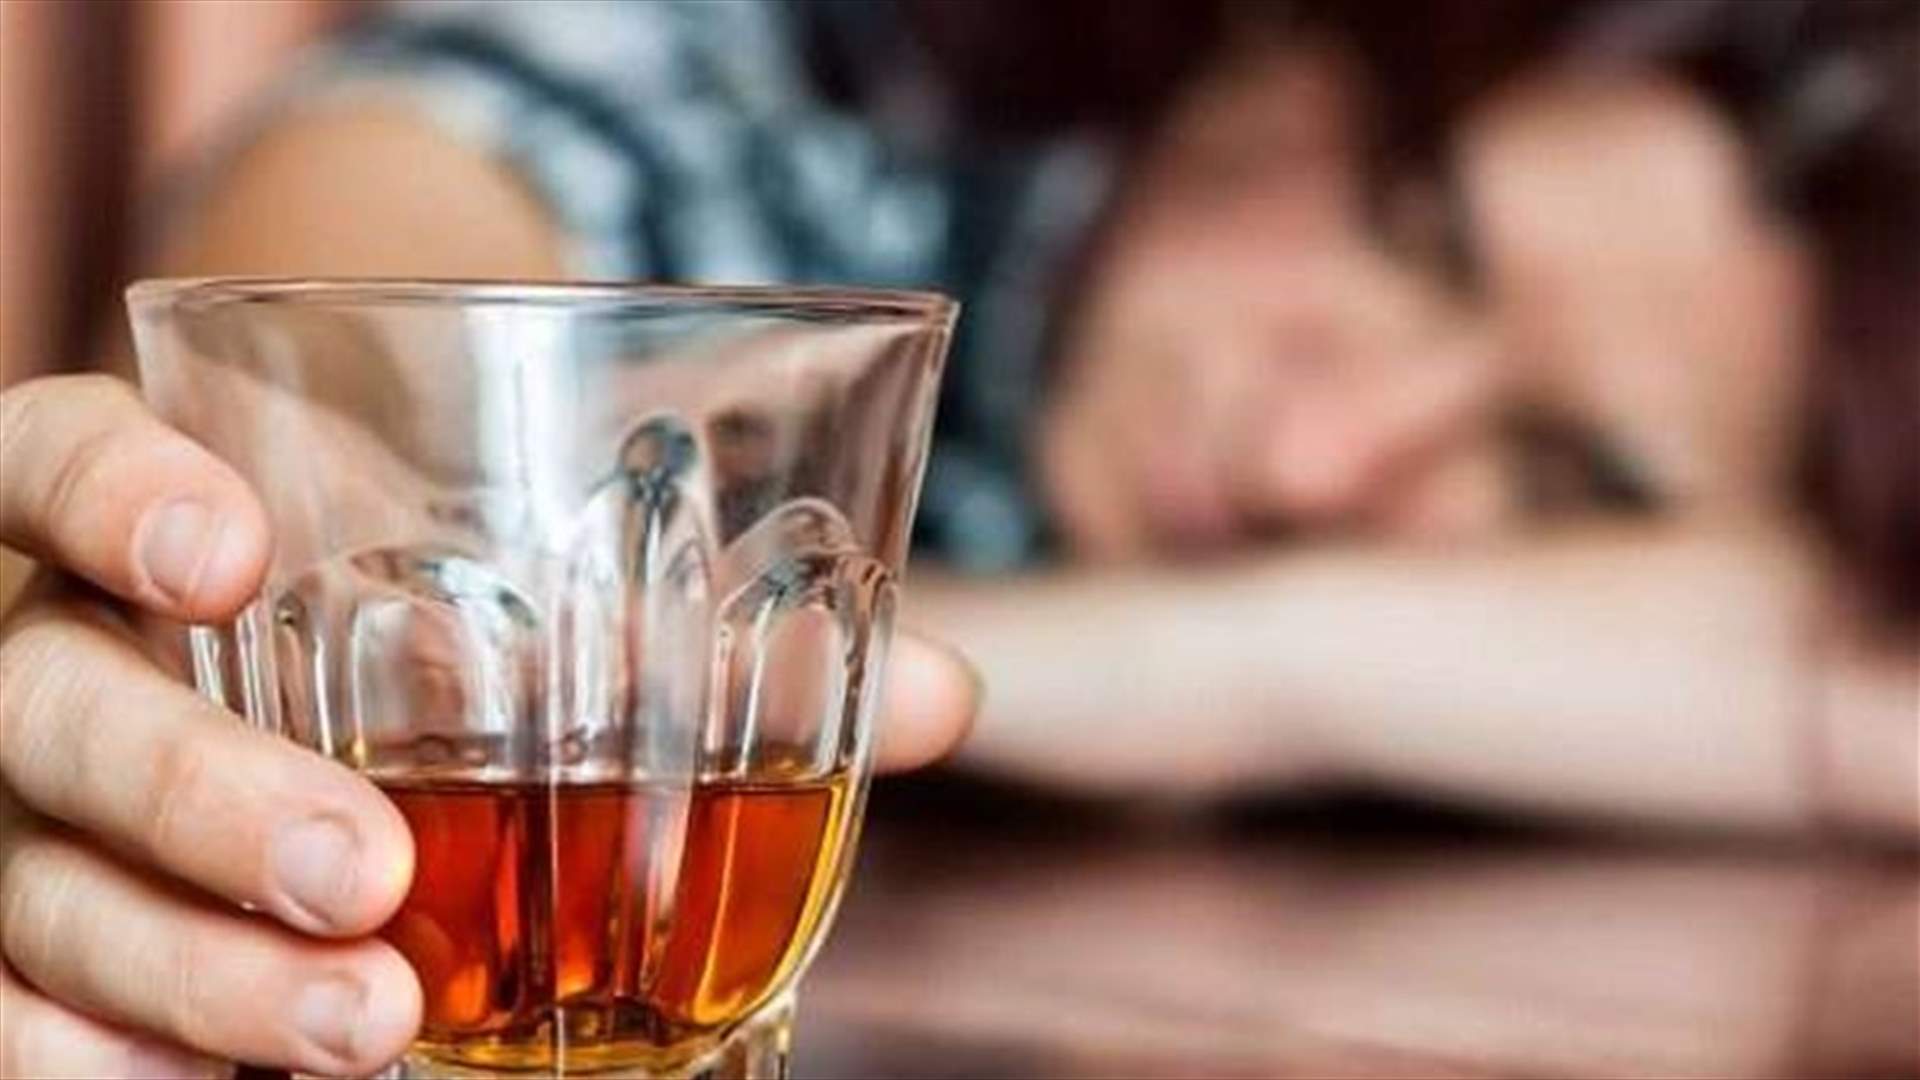 السلطات الروسية: وفاة 18 نتيجة تسمم كحولي في يكاترنبرج